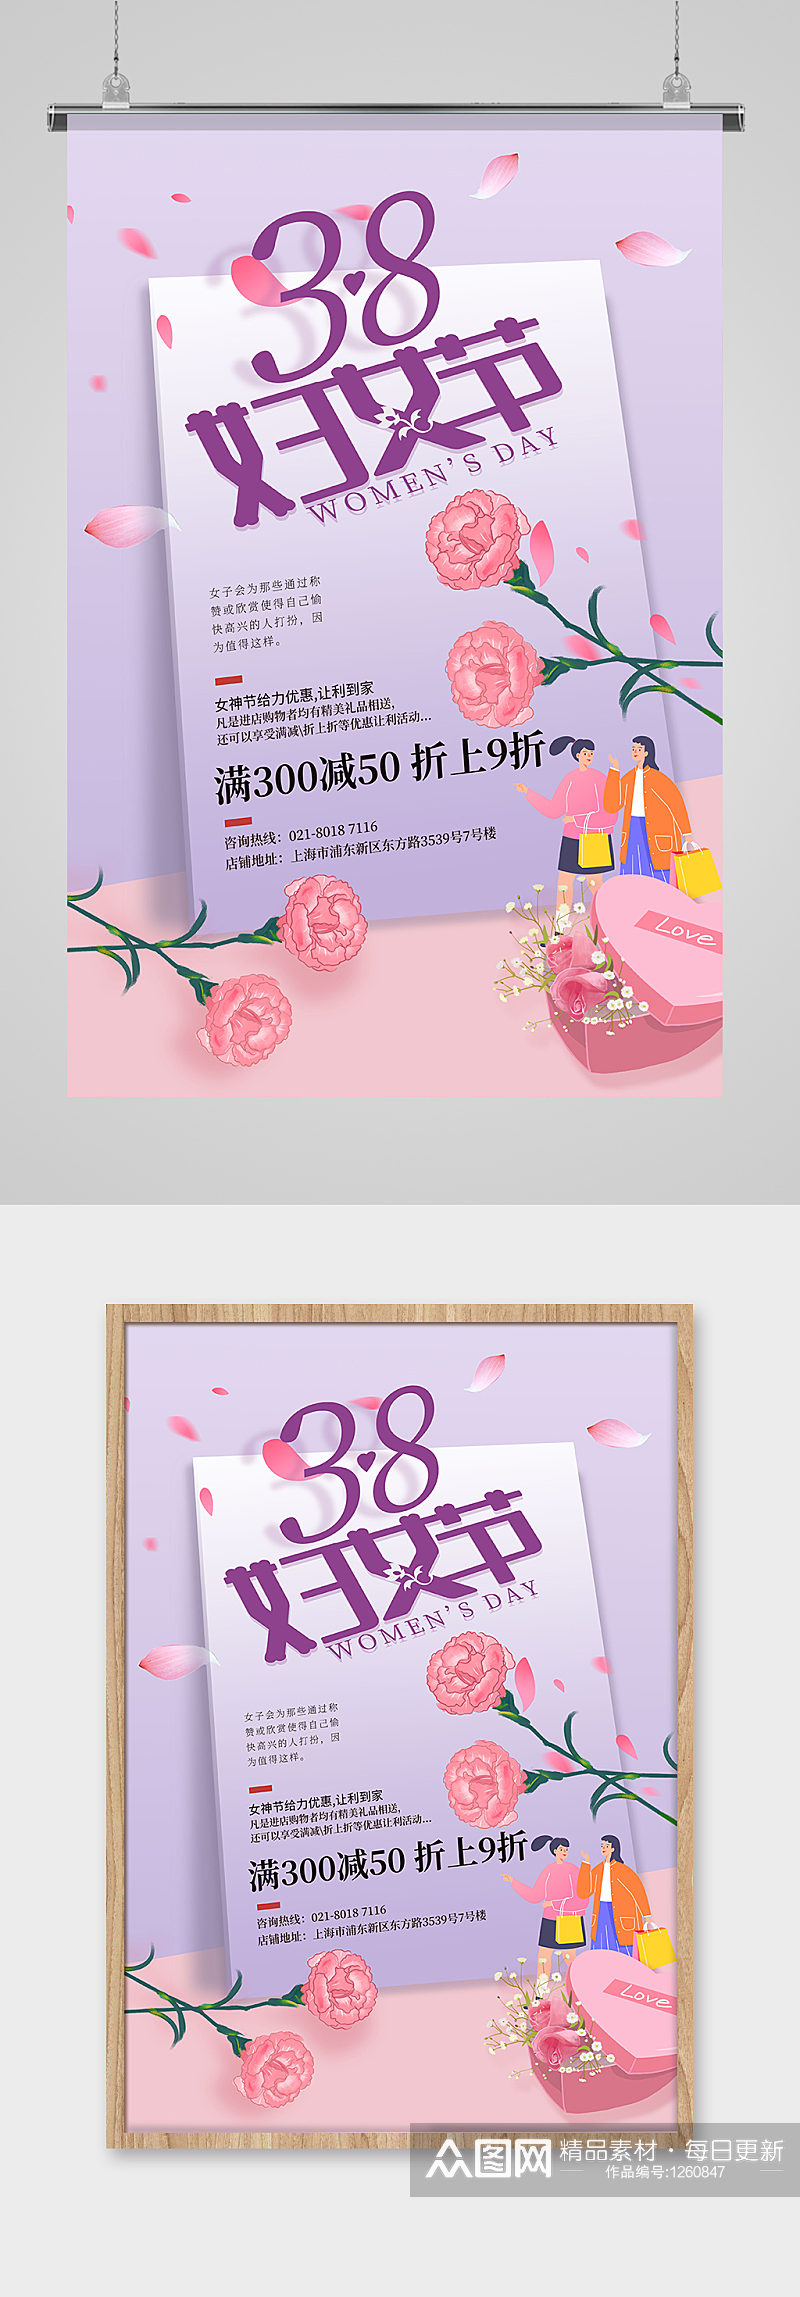 38妇女节花紫色创意海报素材